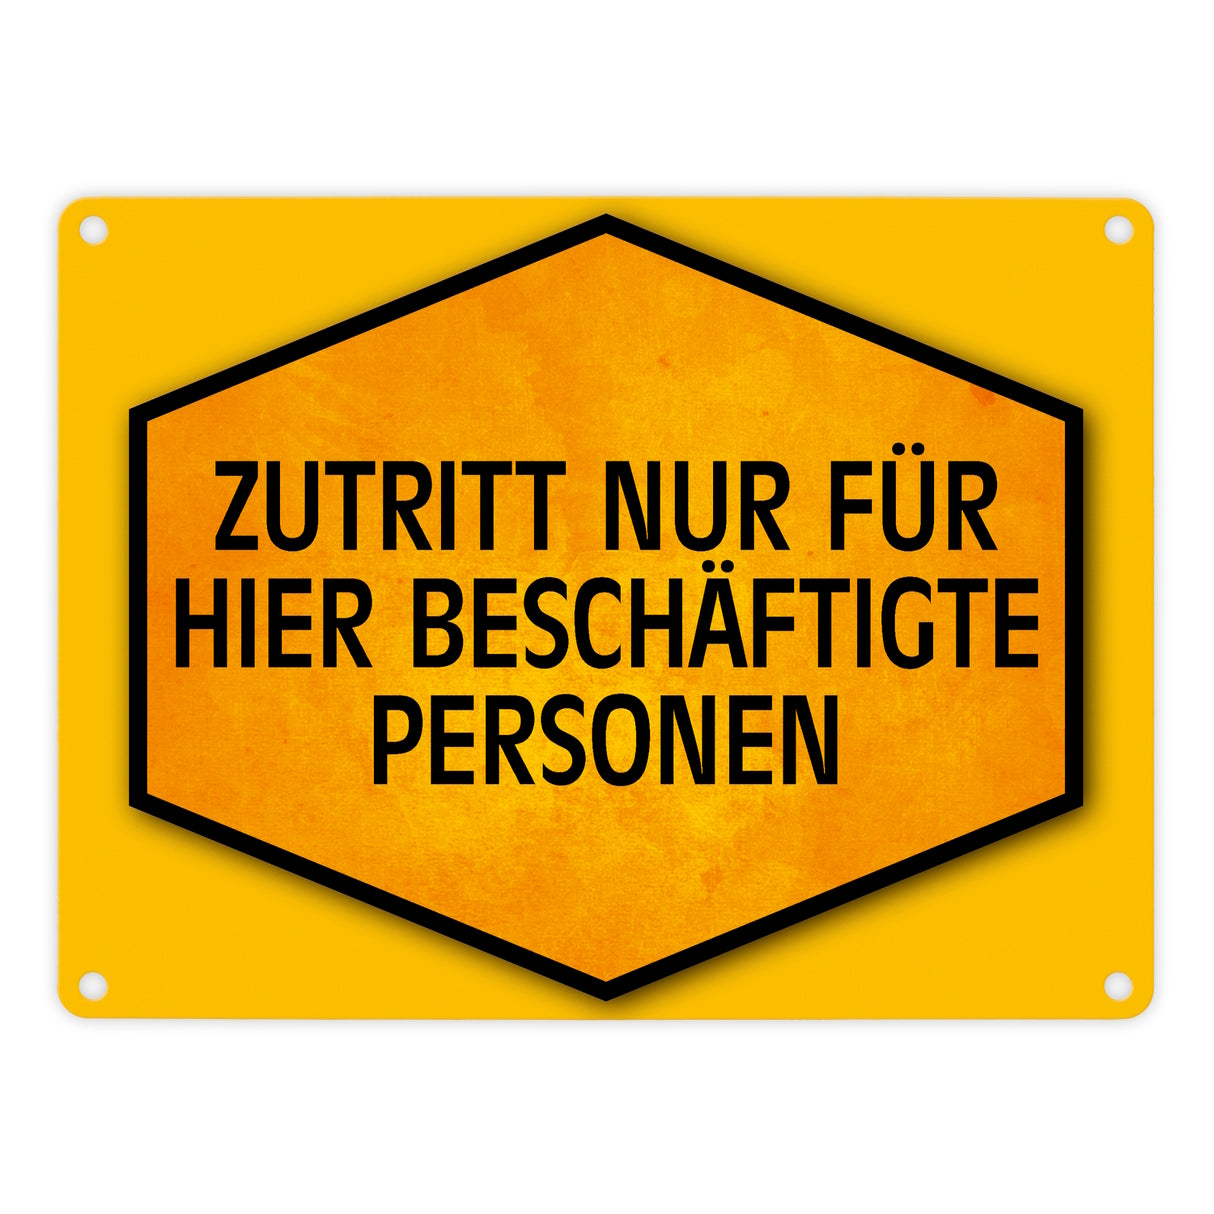 Zutritt nur für hier beschäftigte Personen Warn- und Hinweisschild in Gelb und Schwarz